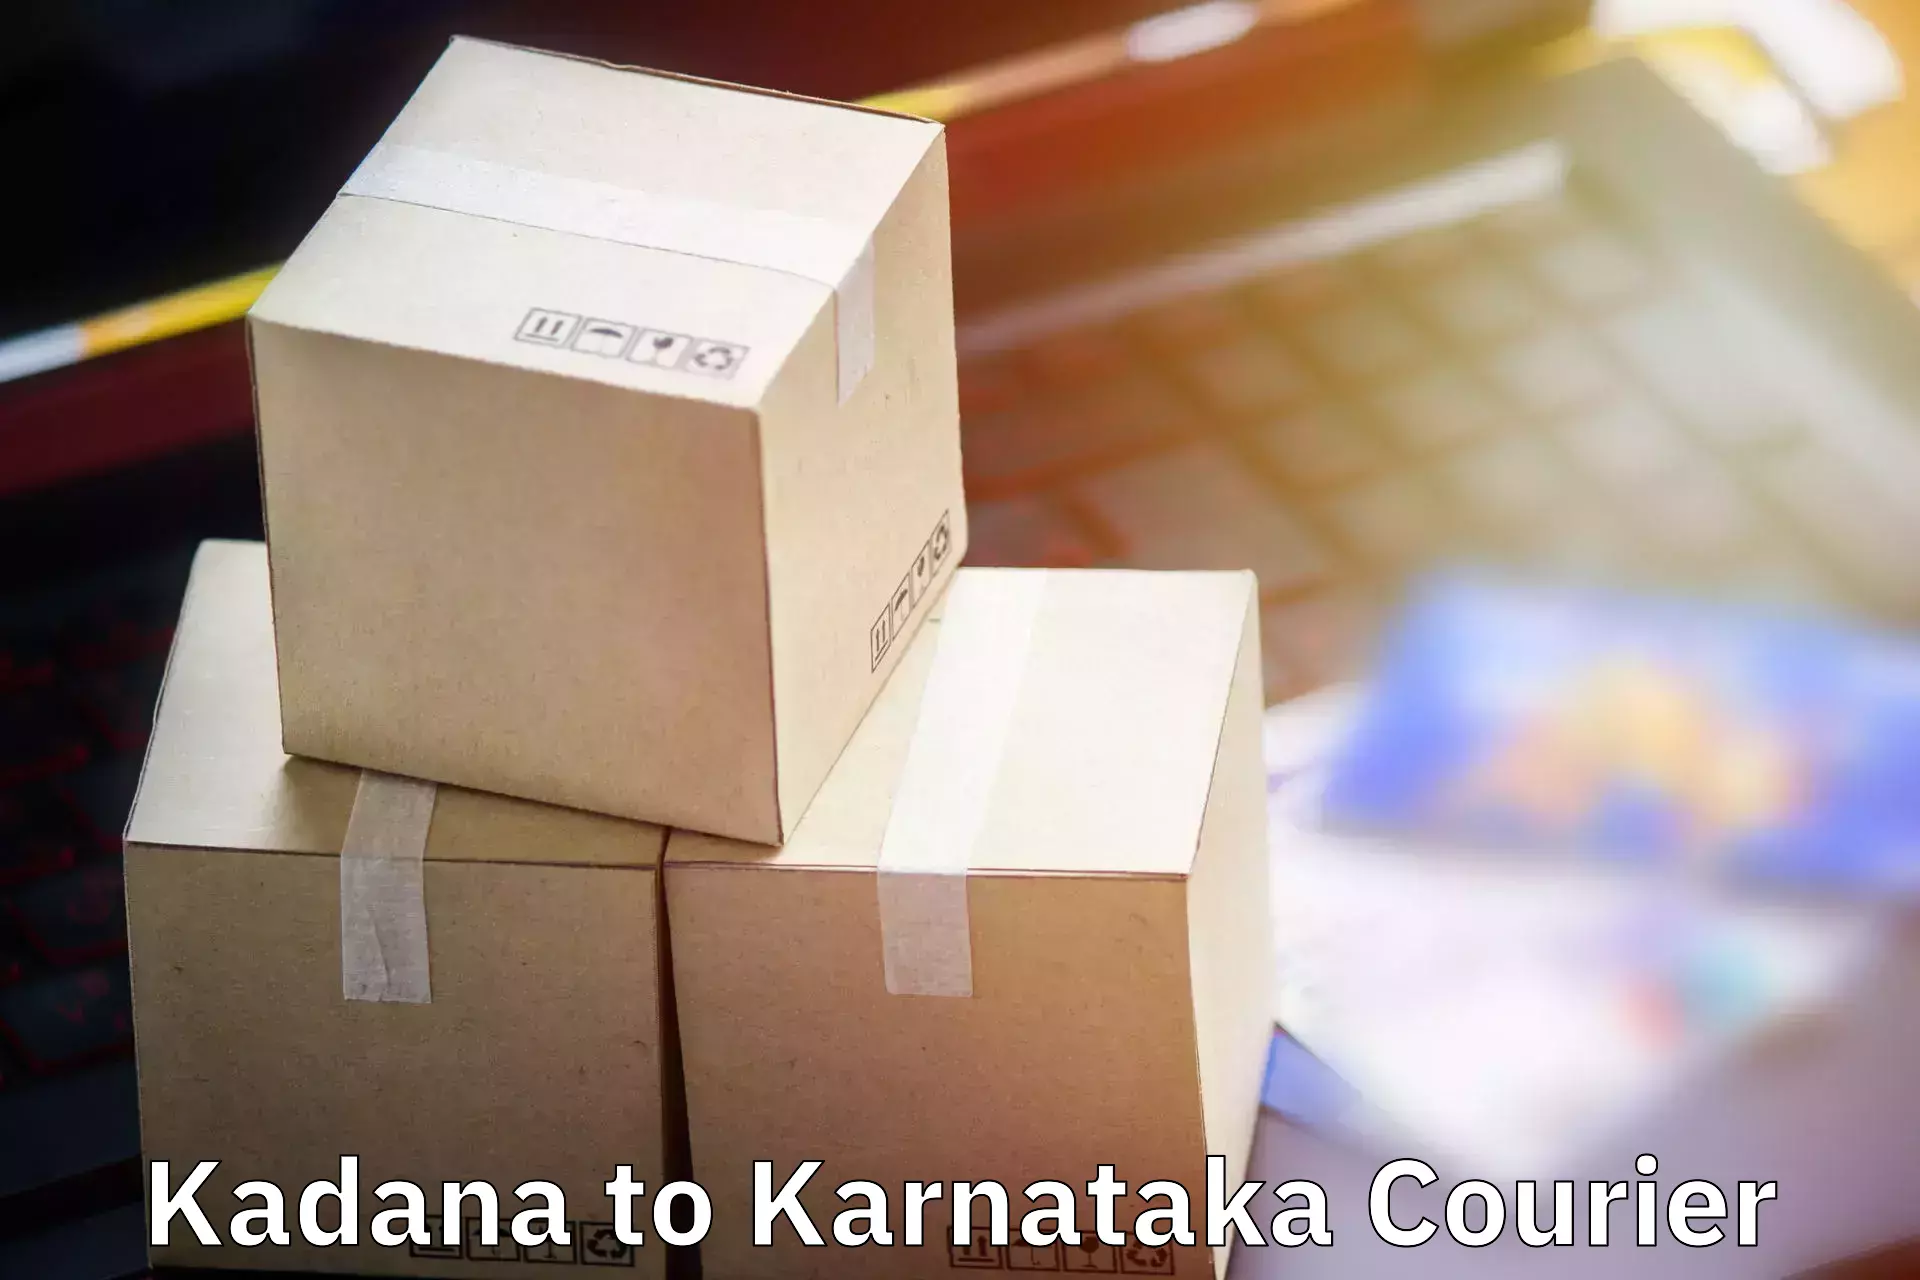 Luggage shipping service Kadana to Sringeri